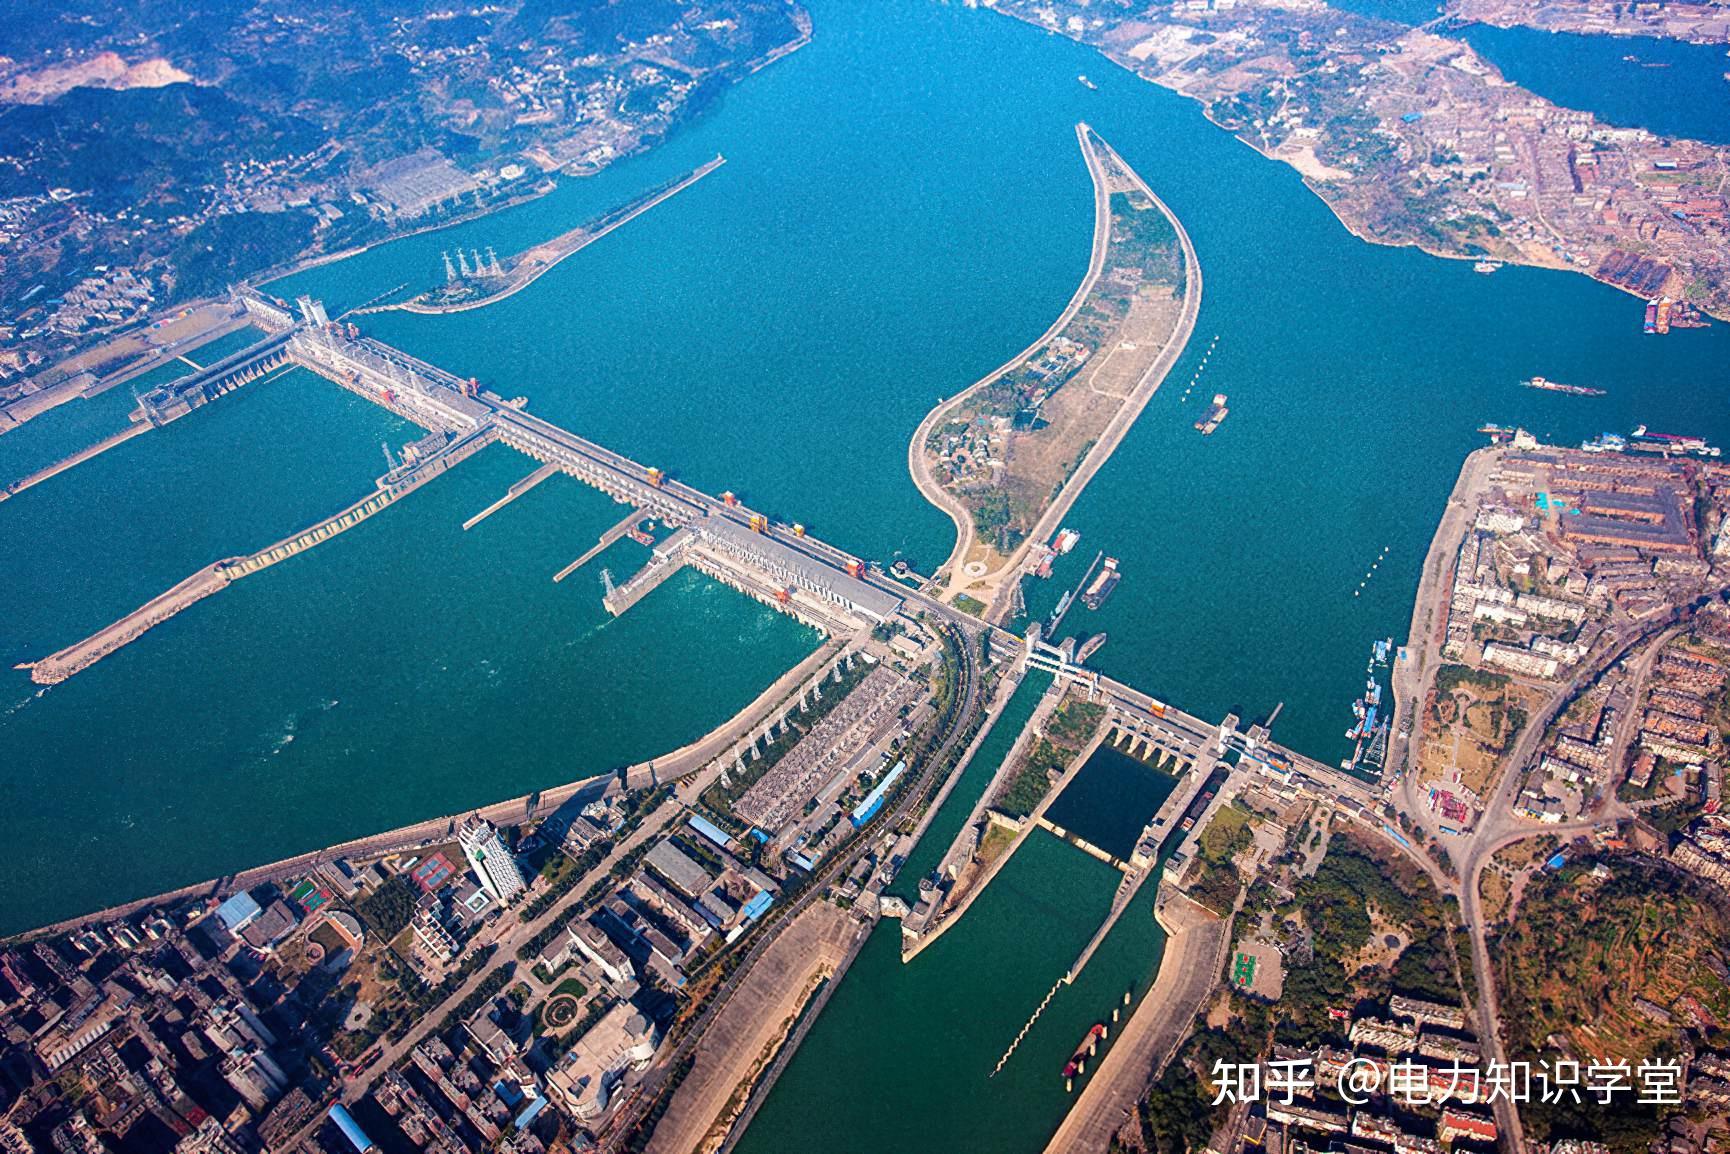 是长江干流上第一座大型水利枢纽工程,在兴建三峡工程前先建葛洲坝,既